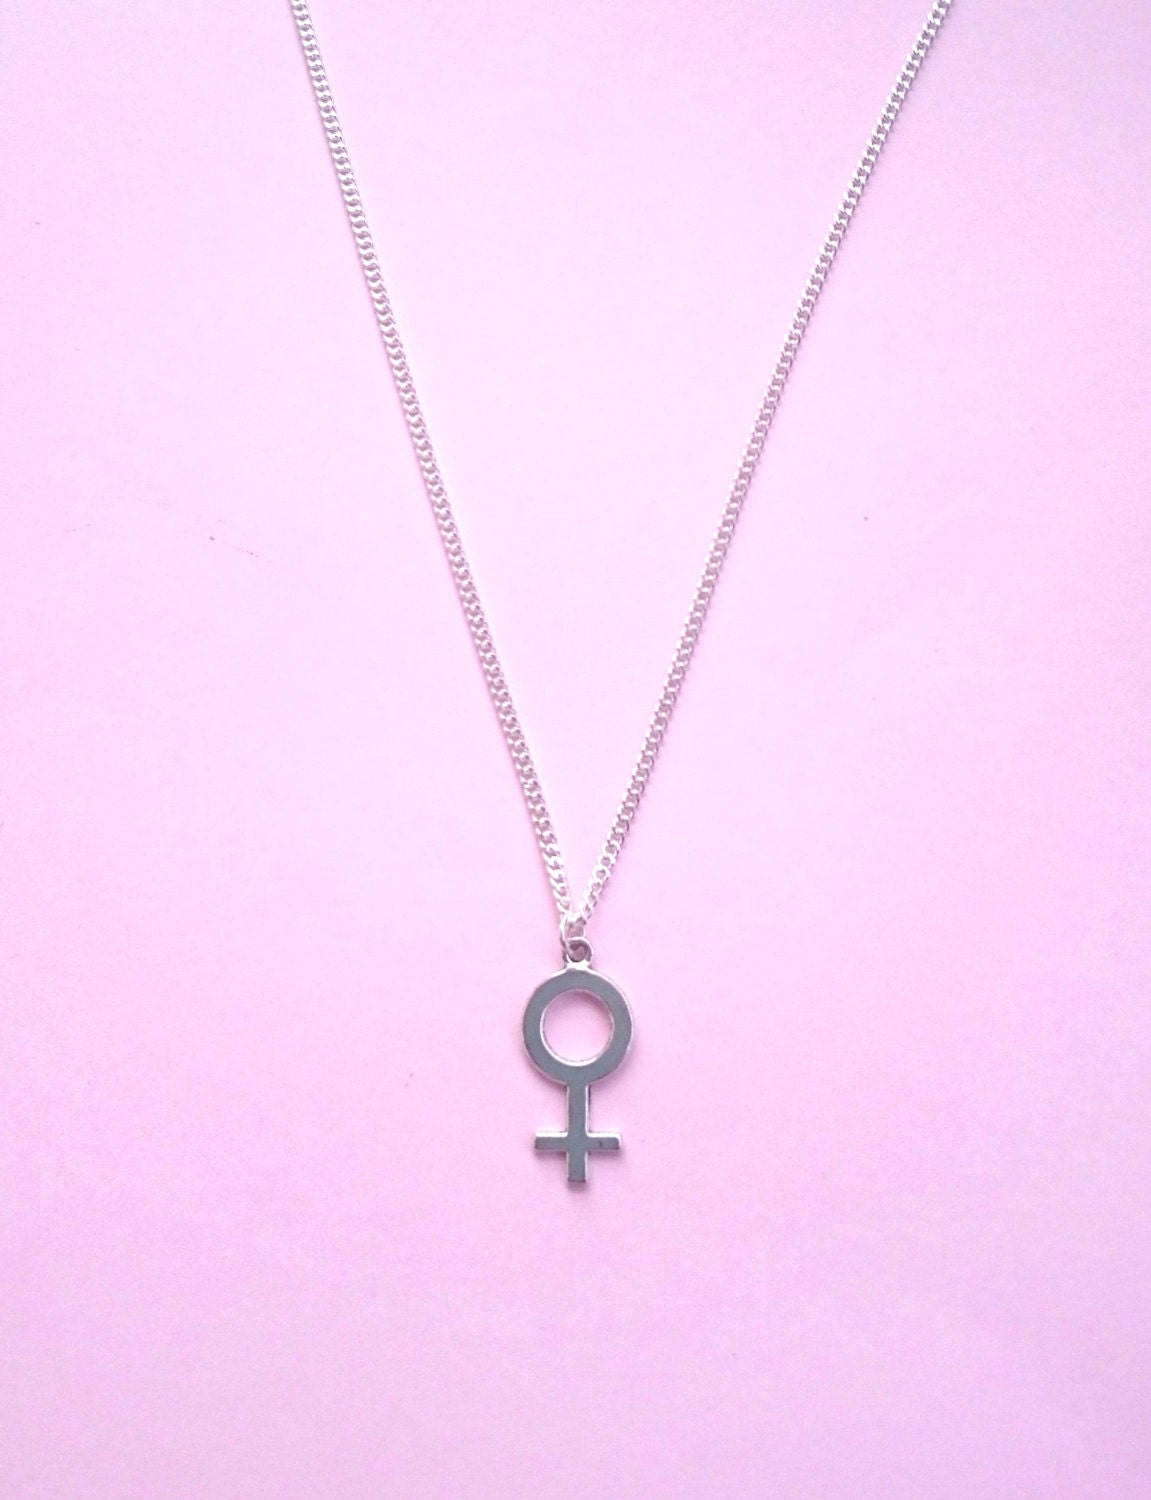 Large Feminist Symbol Necklace Female Symbol by catfightback